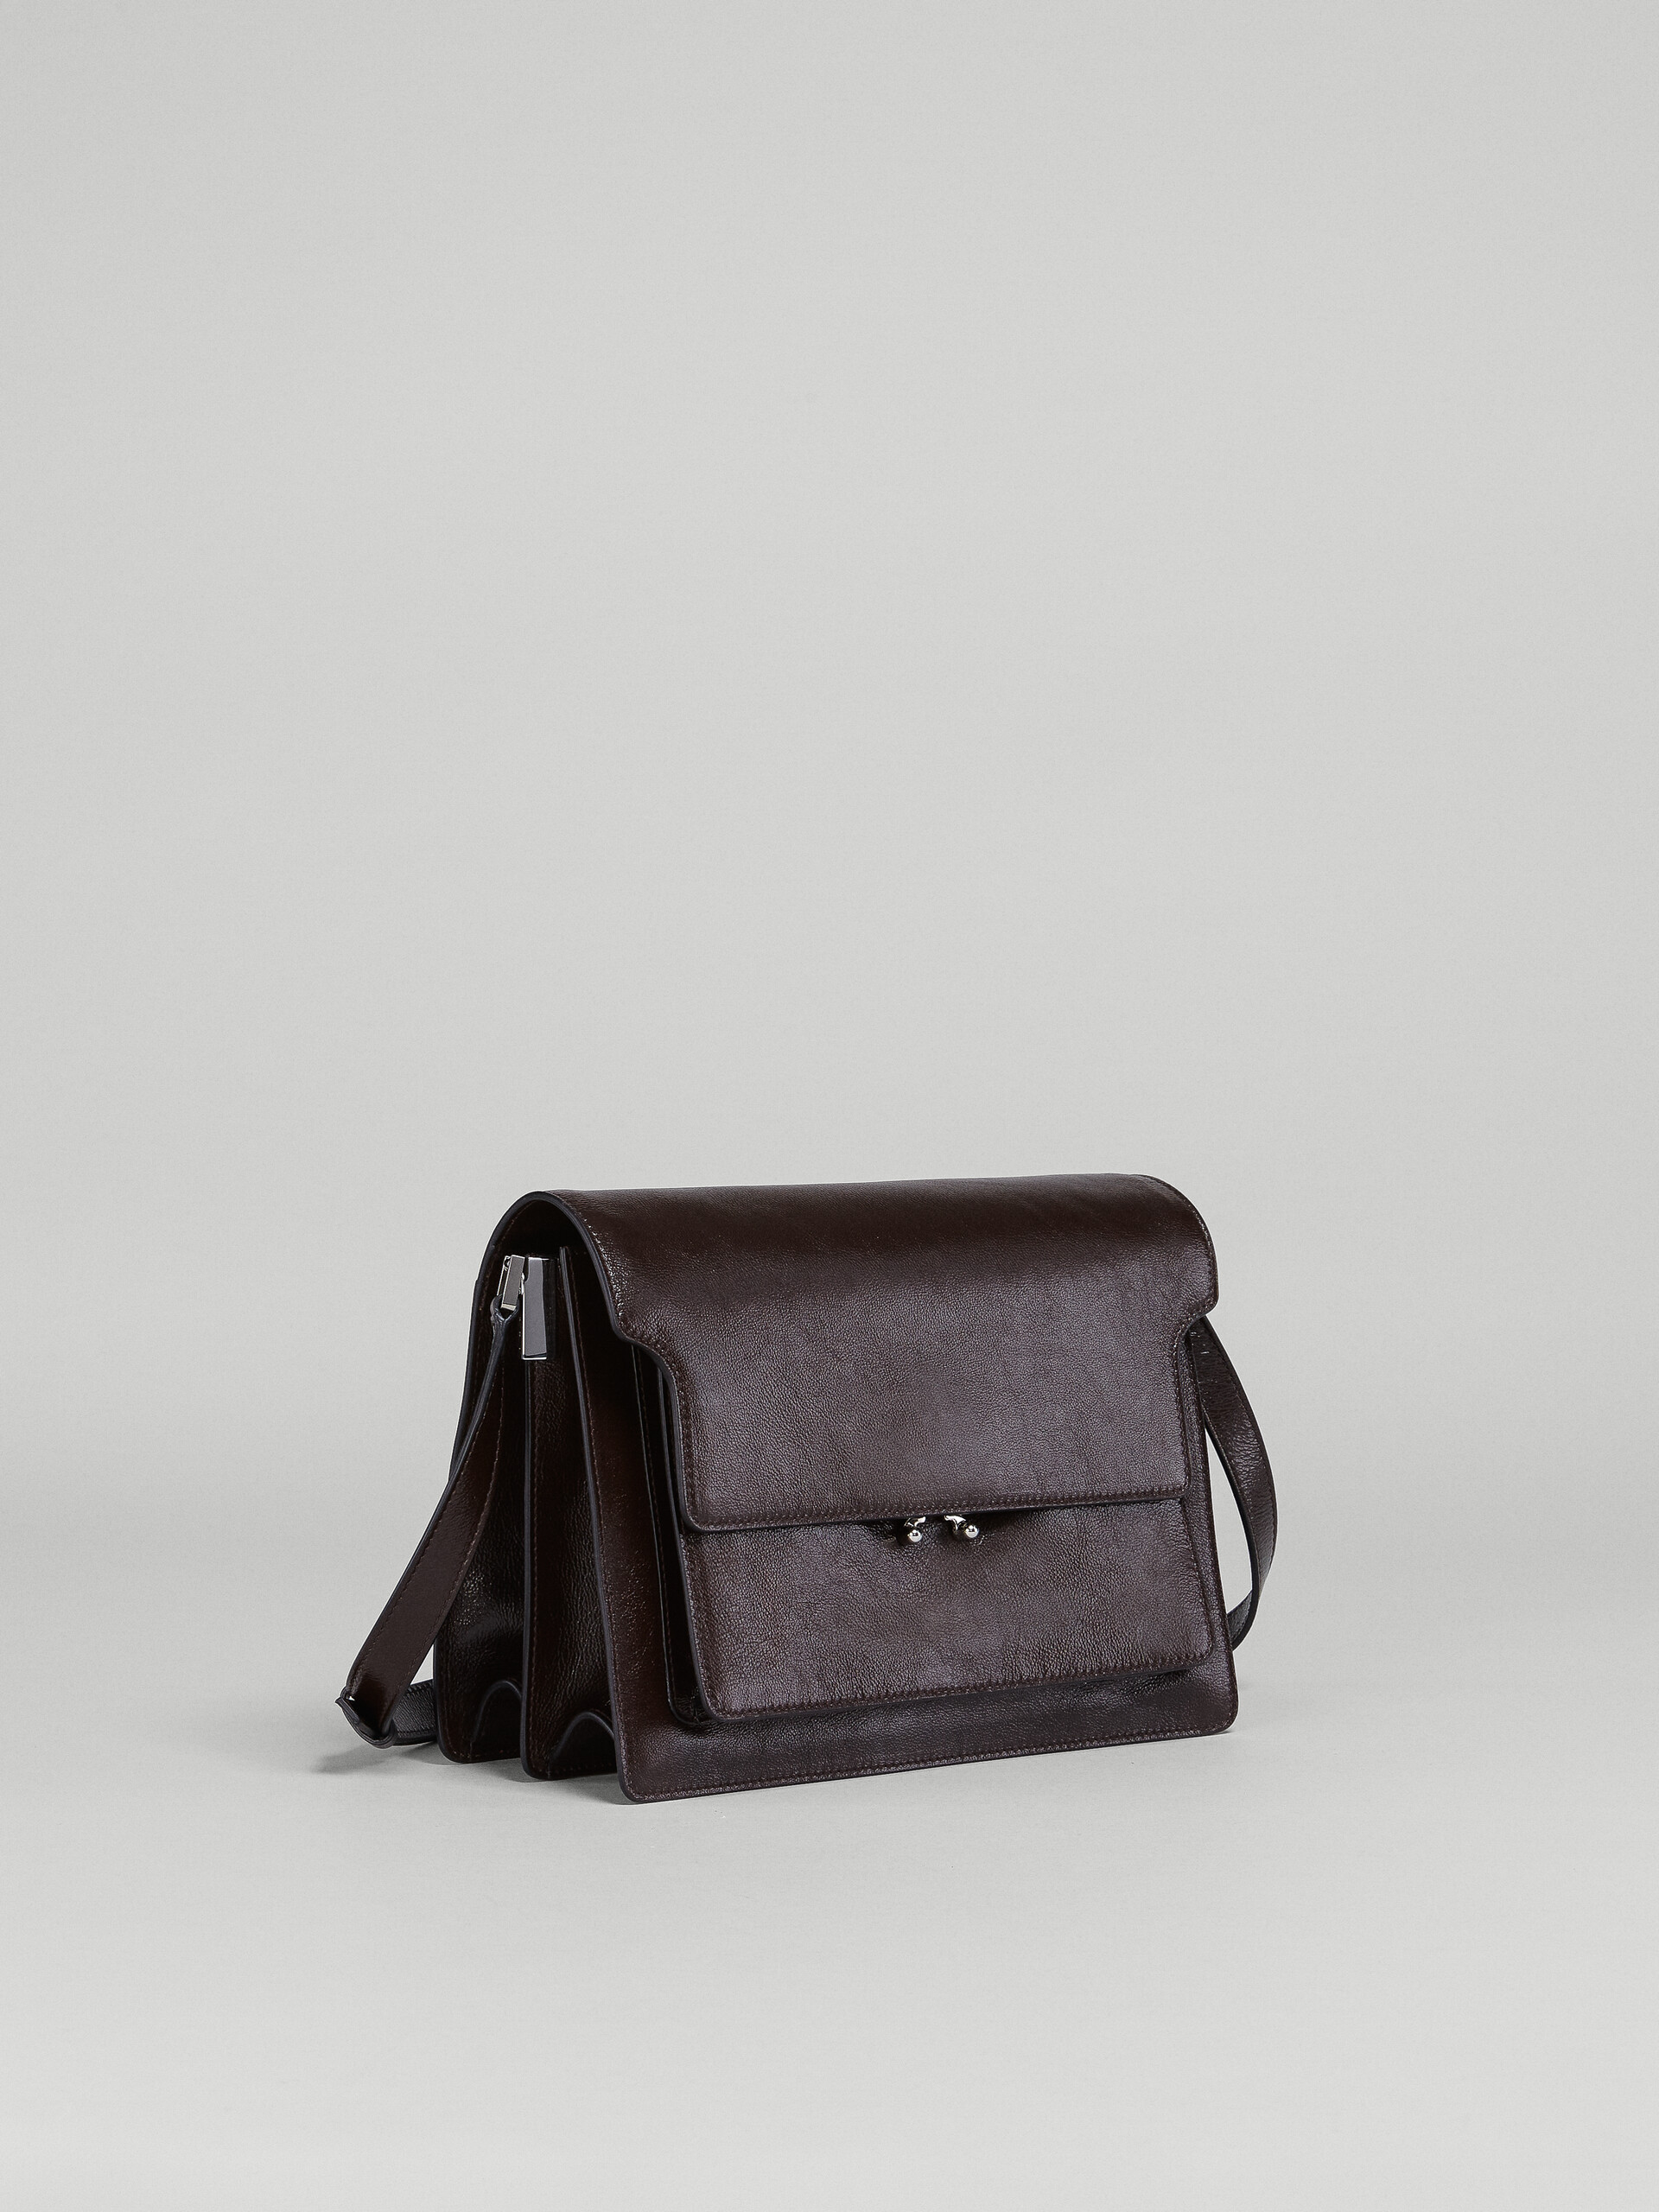 TRUNK SOFT large bag in brown leather - Shoulder Bag - Image 5